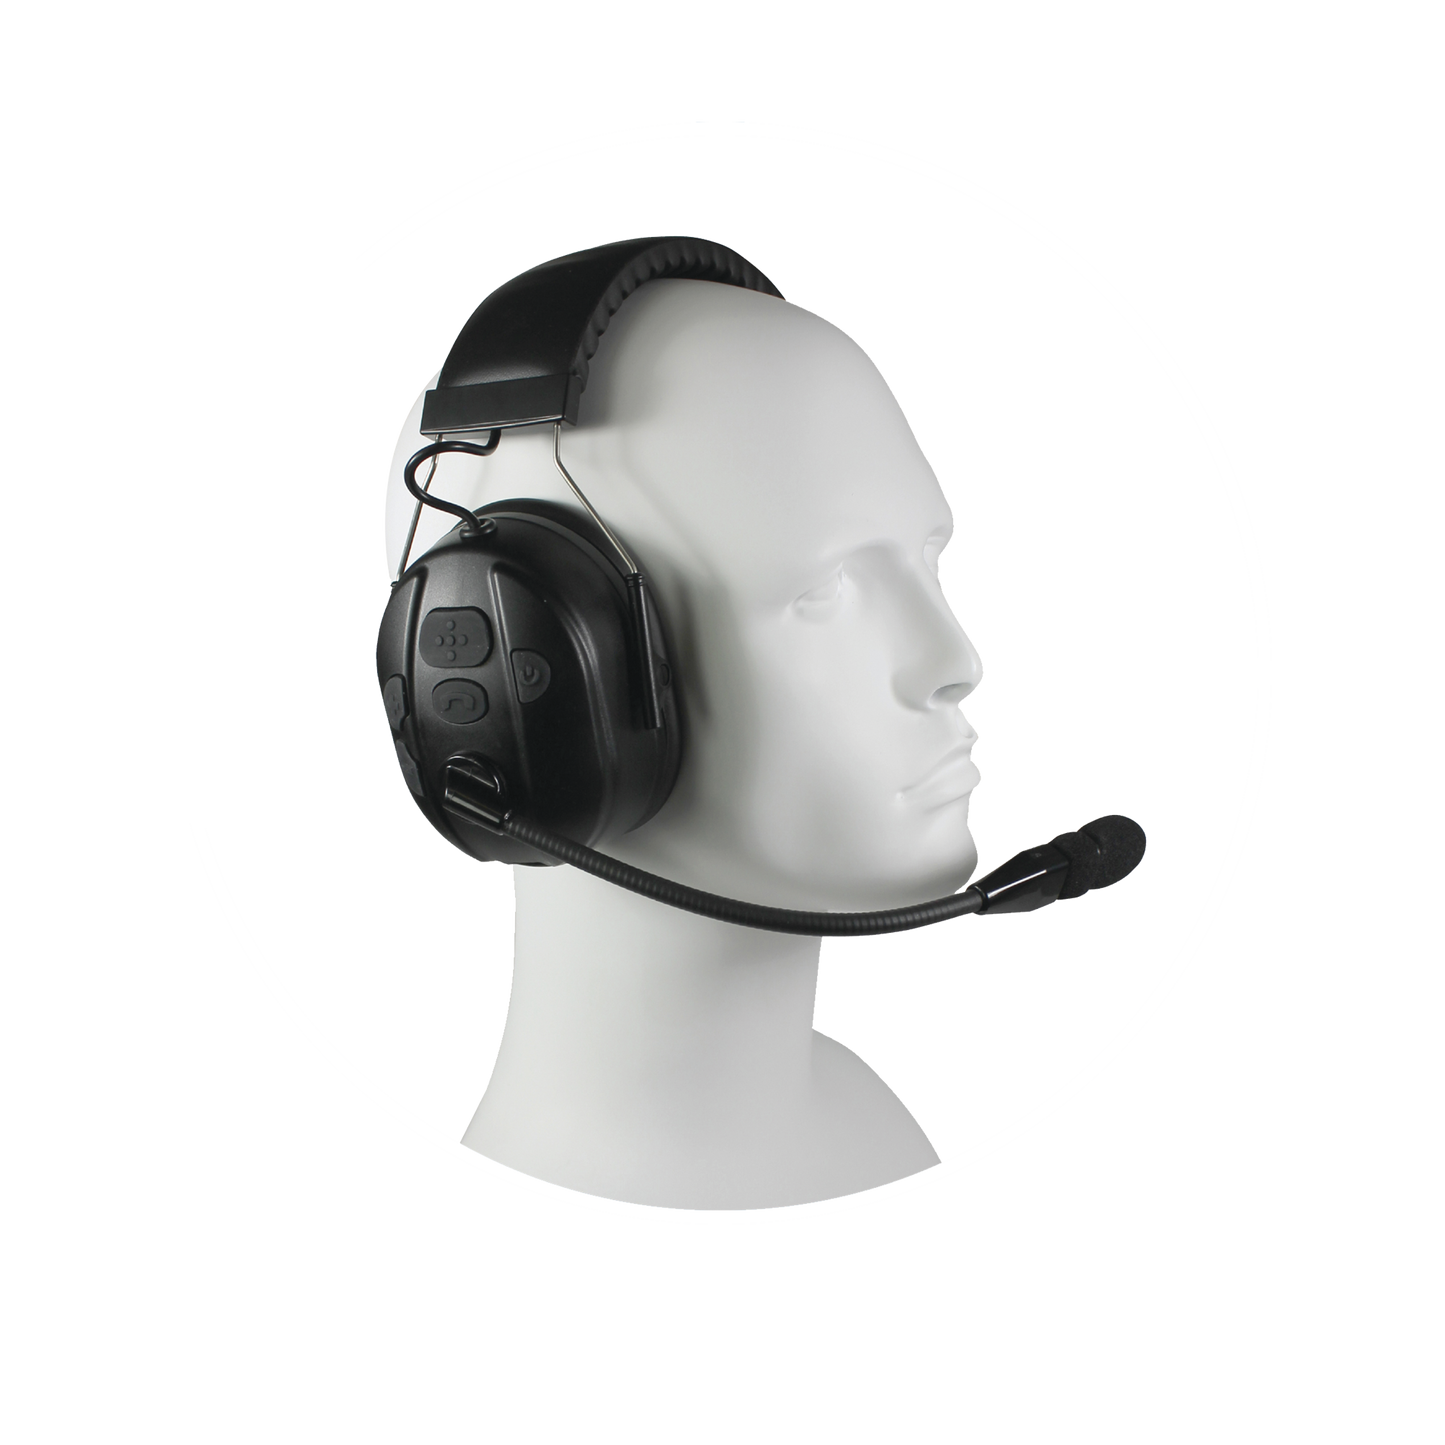 Audífonos inalámbricos Bluetooth con diadema rígida por arriba de la cabeza compatible con adaptadores PRYME BLU, radio y dispositivos bluetooth, con función de PTT y para contestar celulares.